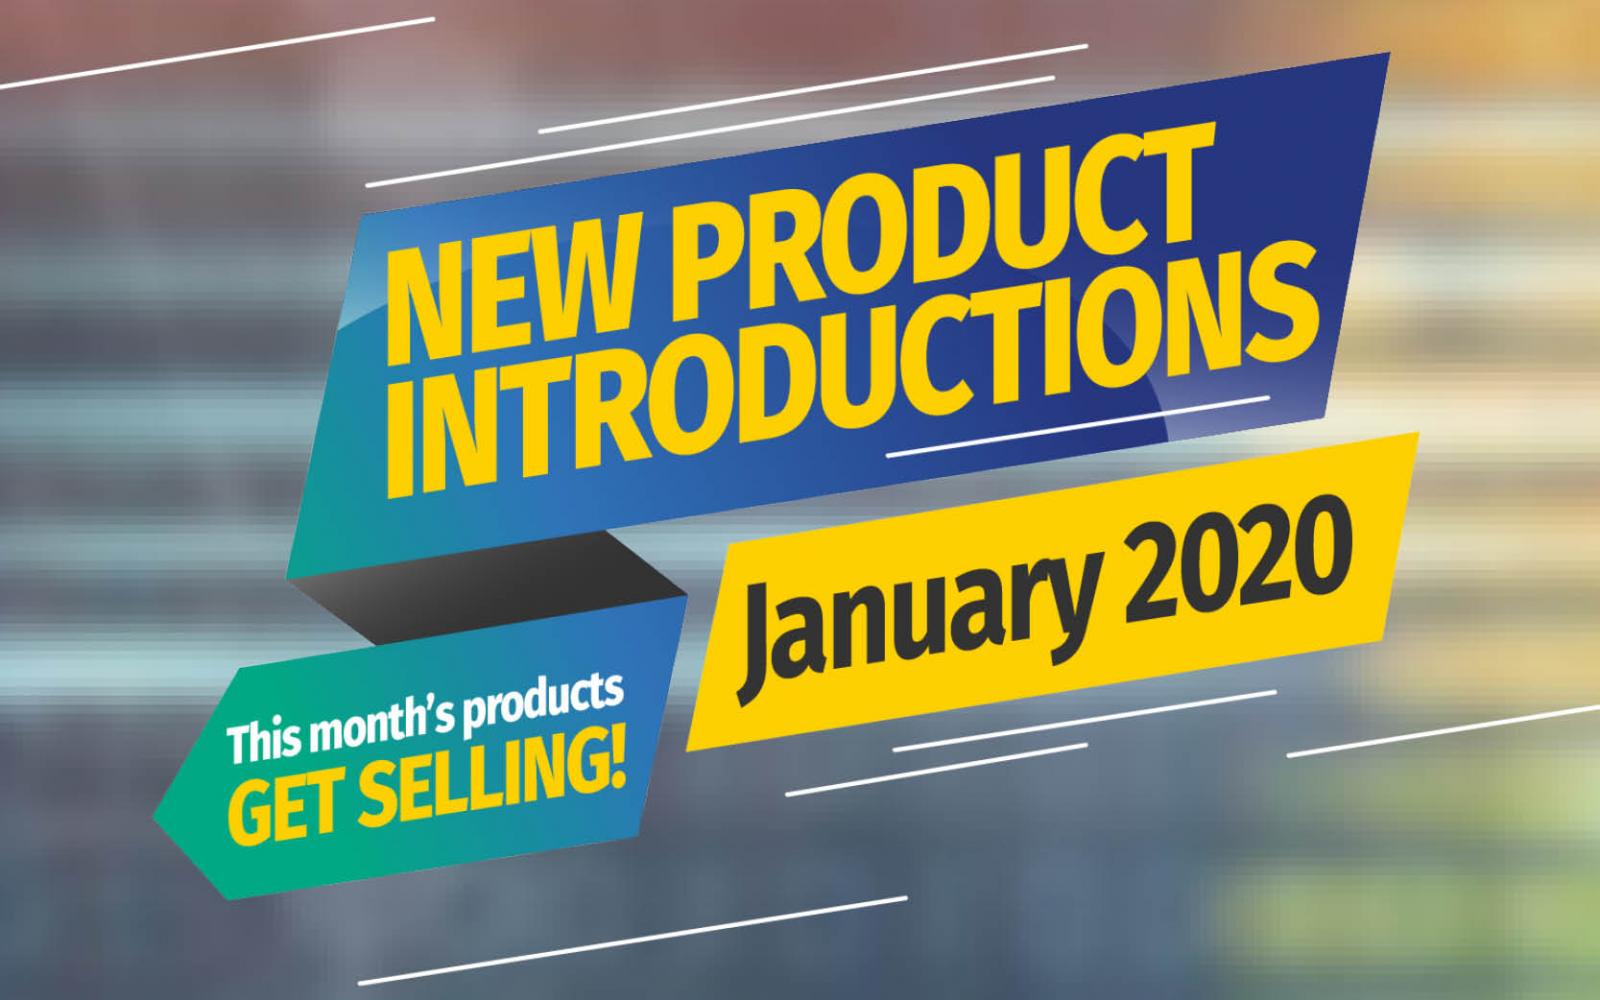 Featured Image: Presentaciones de Nuevos Productos - Enero 2020